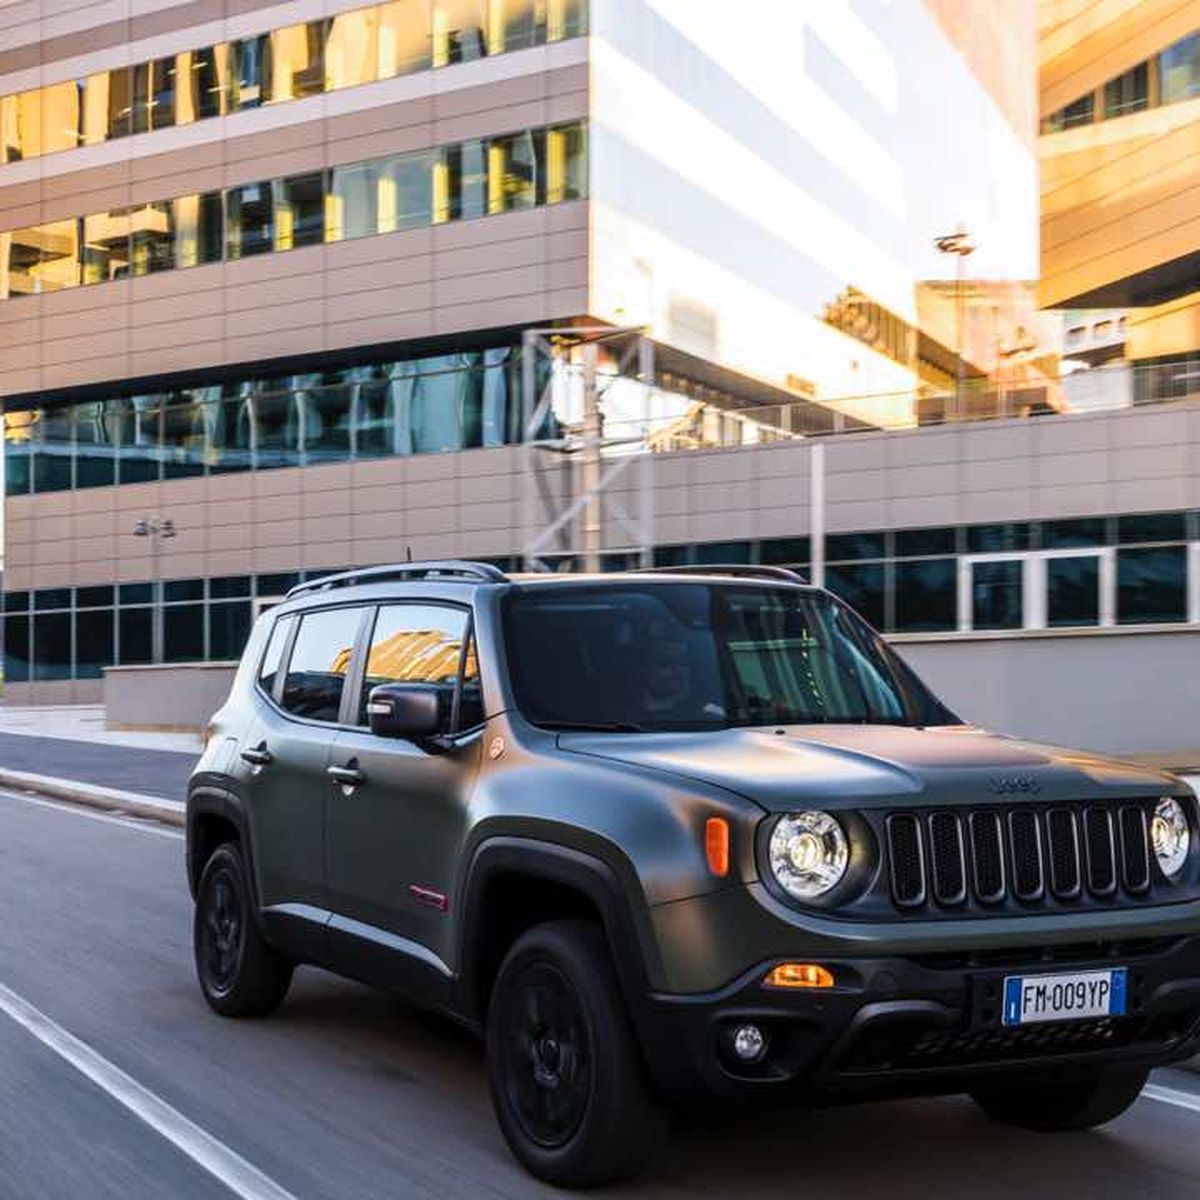 Prueba del nuevo Jeep Renegade 2018: Jeep, Jeep, ¡hurra!